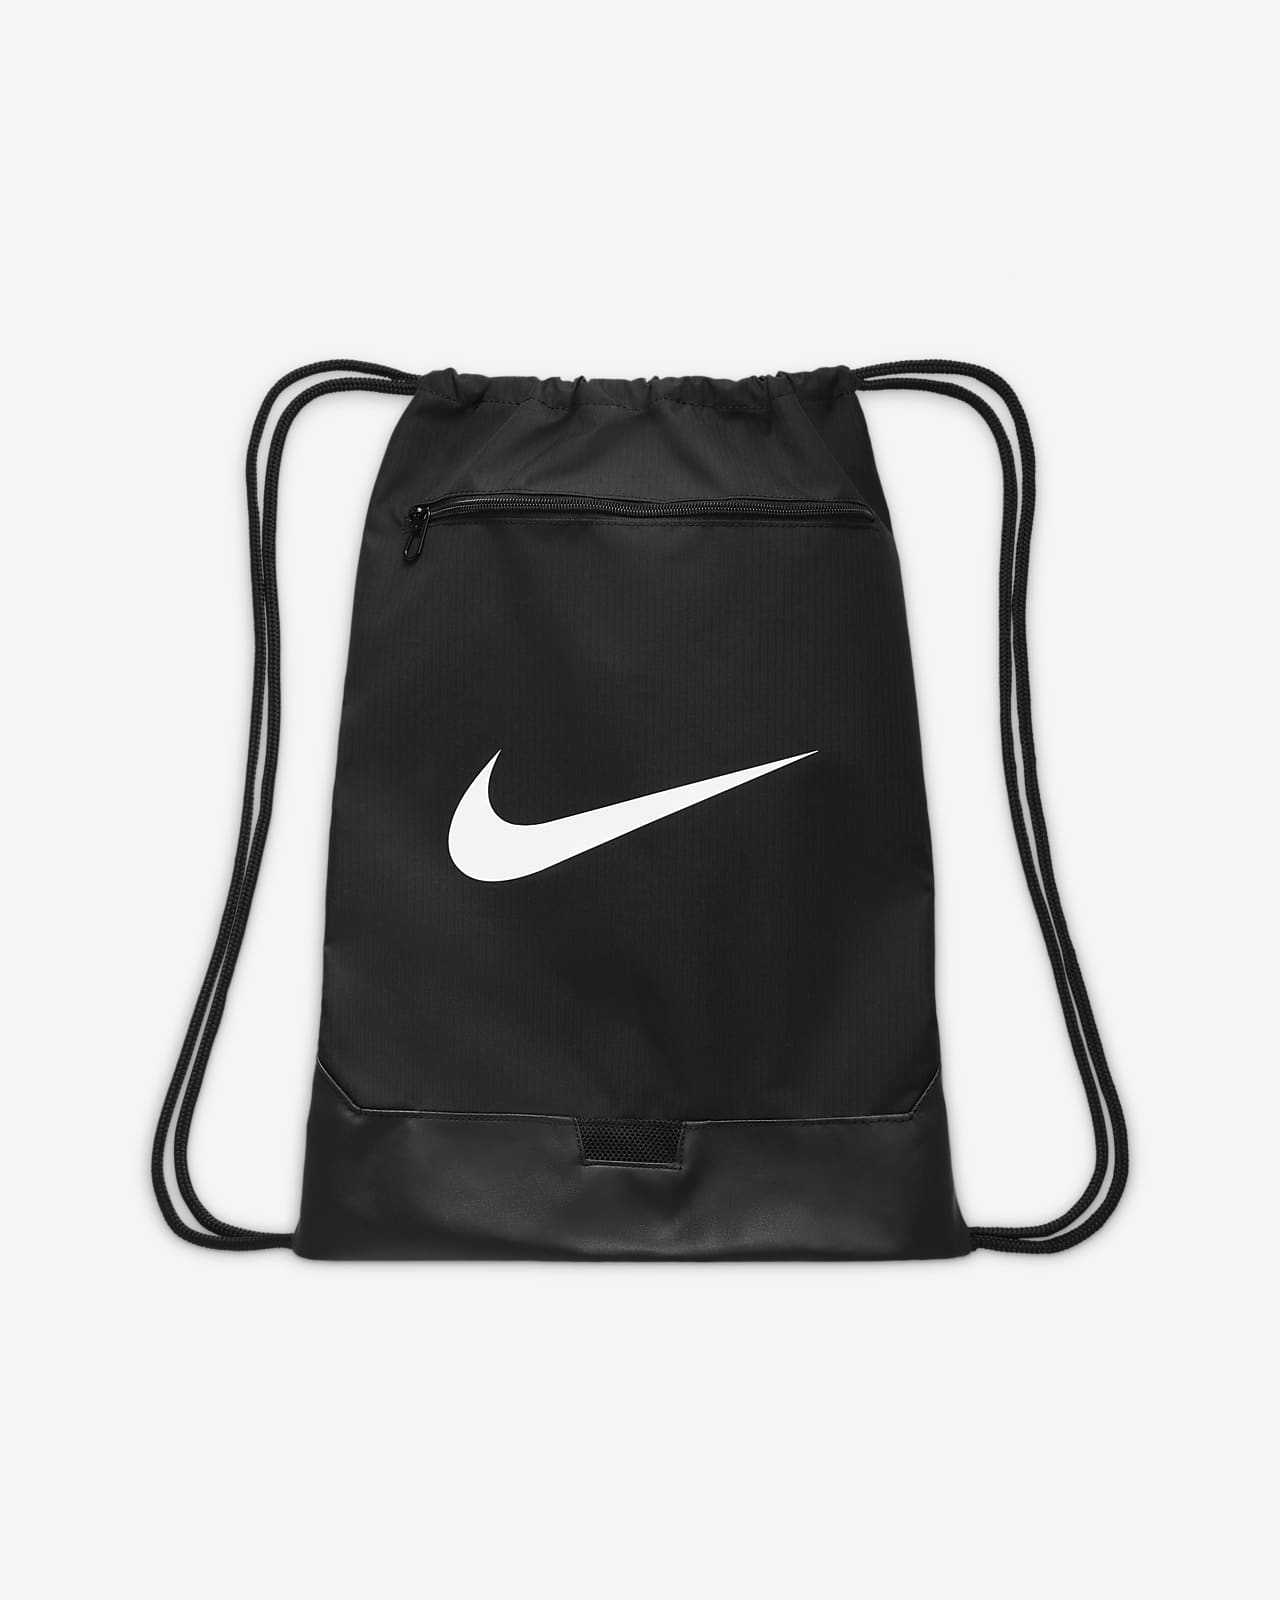 Hombre Entrenamiento & gym Bolsas y mochilas. Nike US